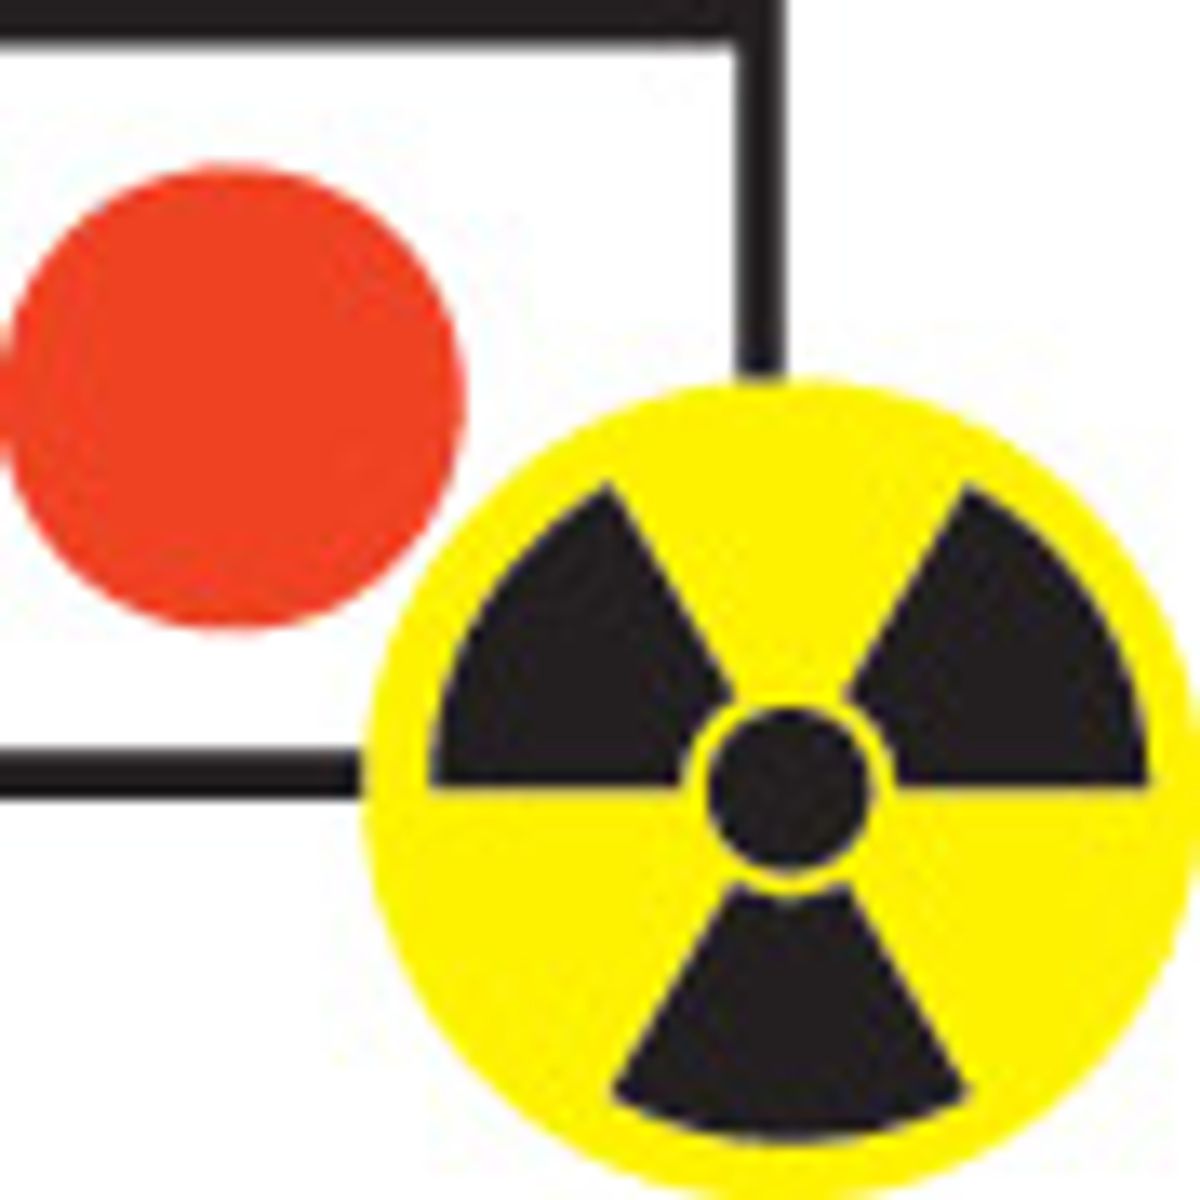 Quake and Tsunami Warning Halt Work at Fukushima Plant